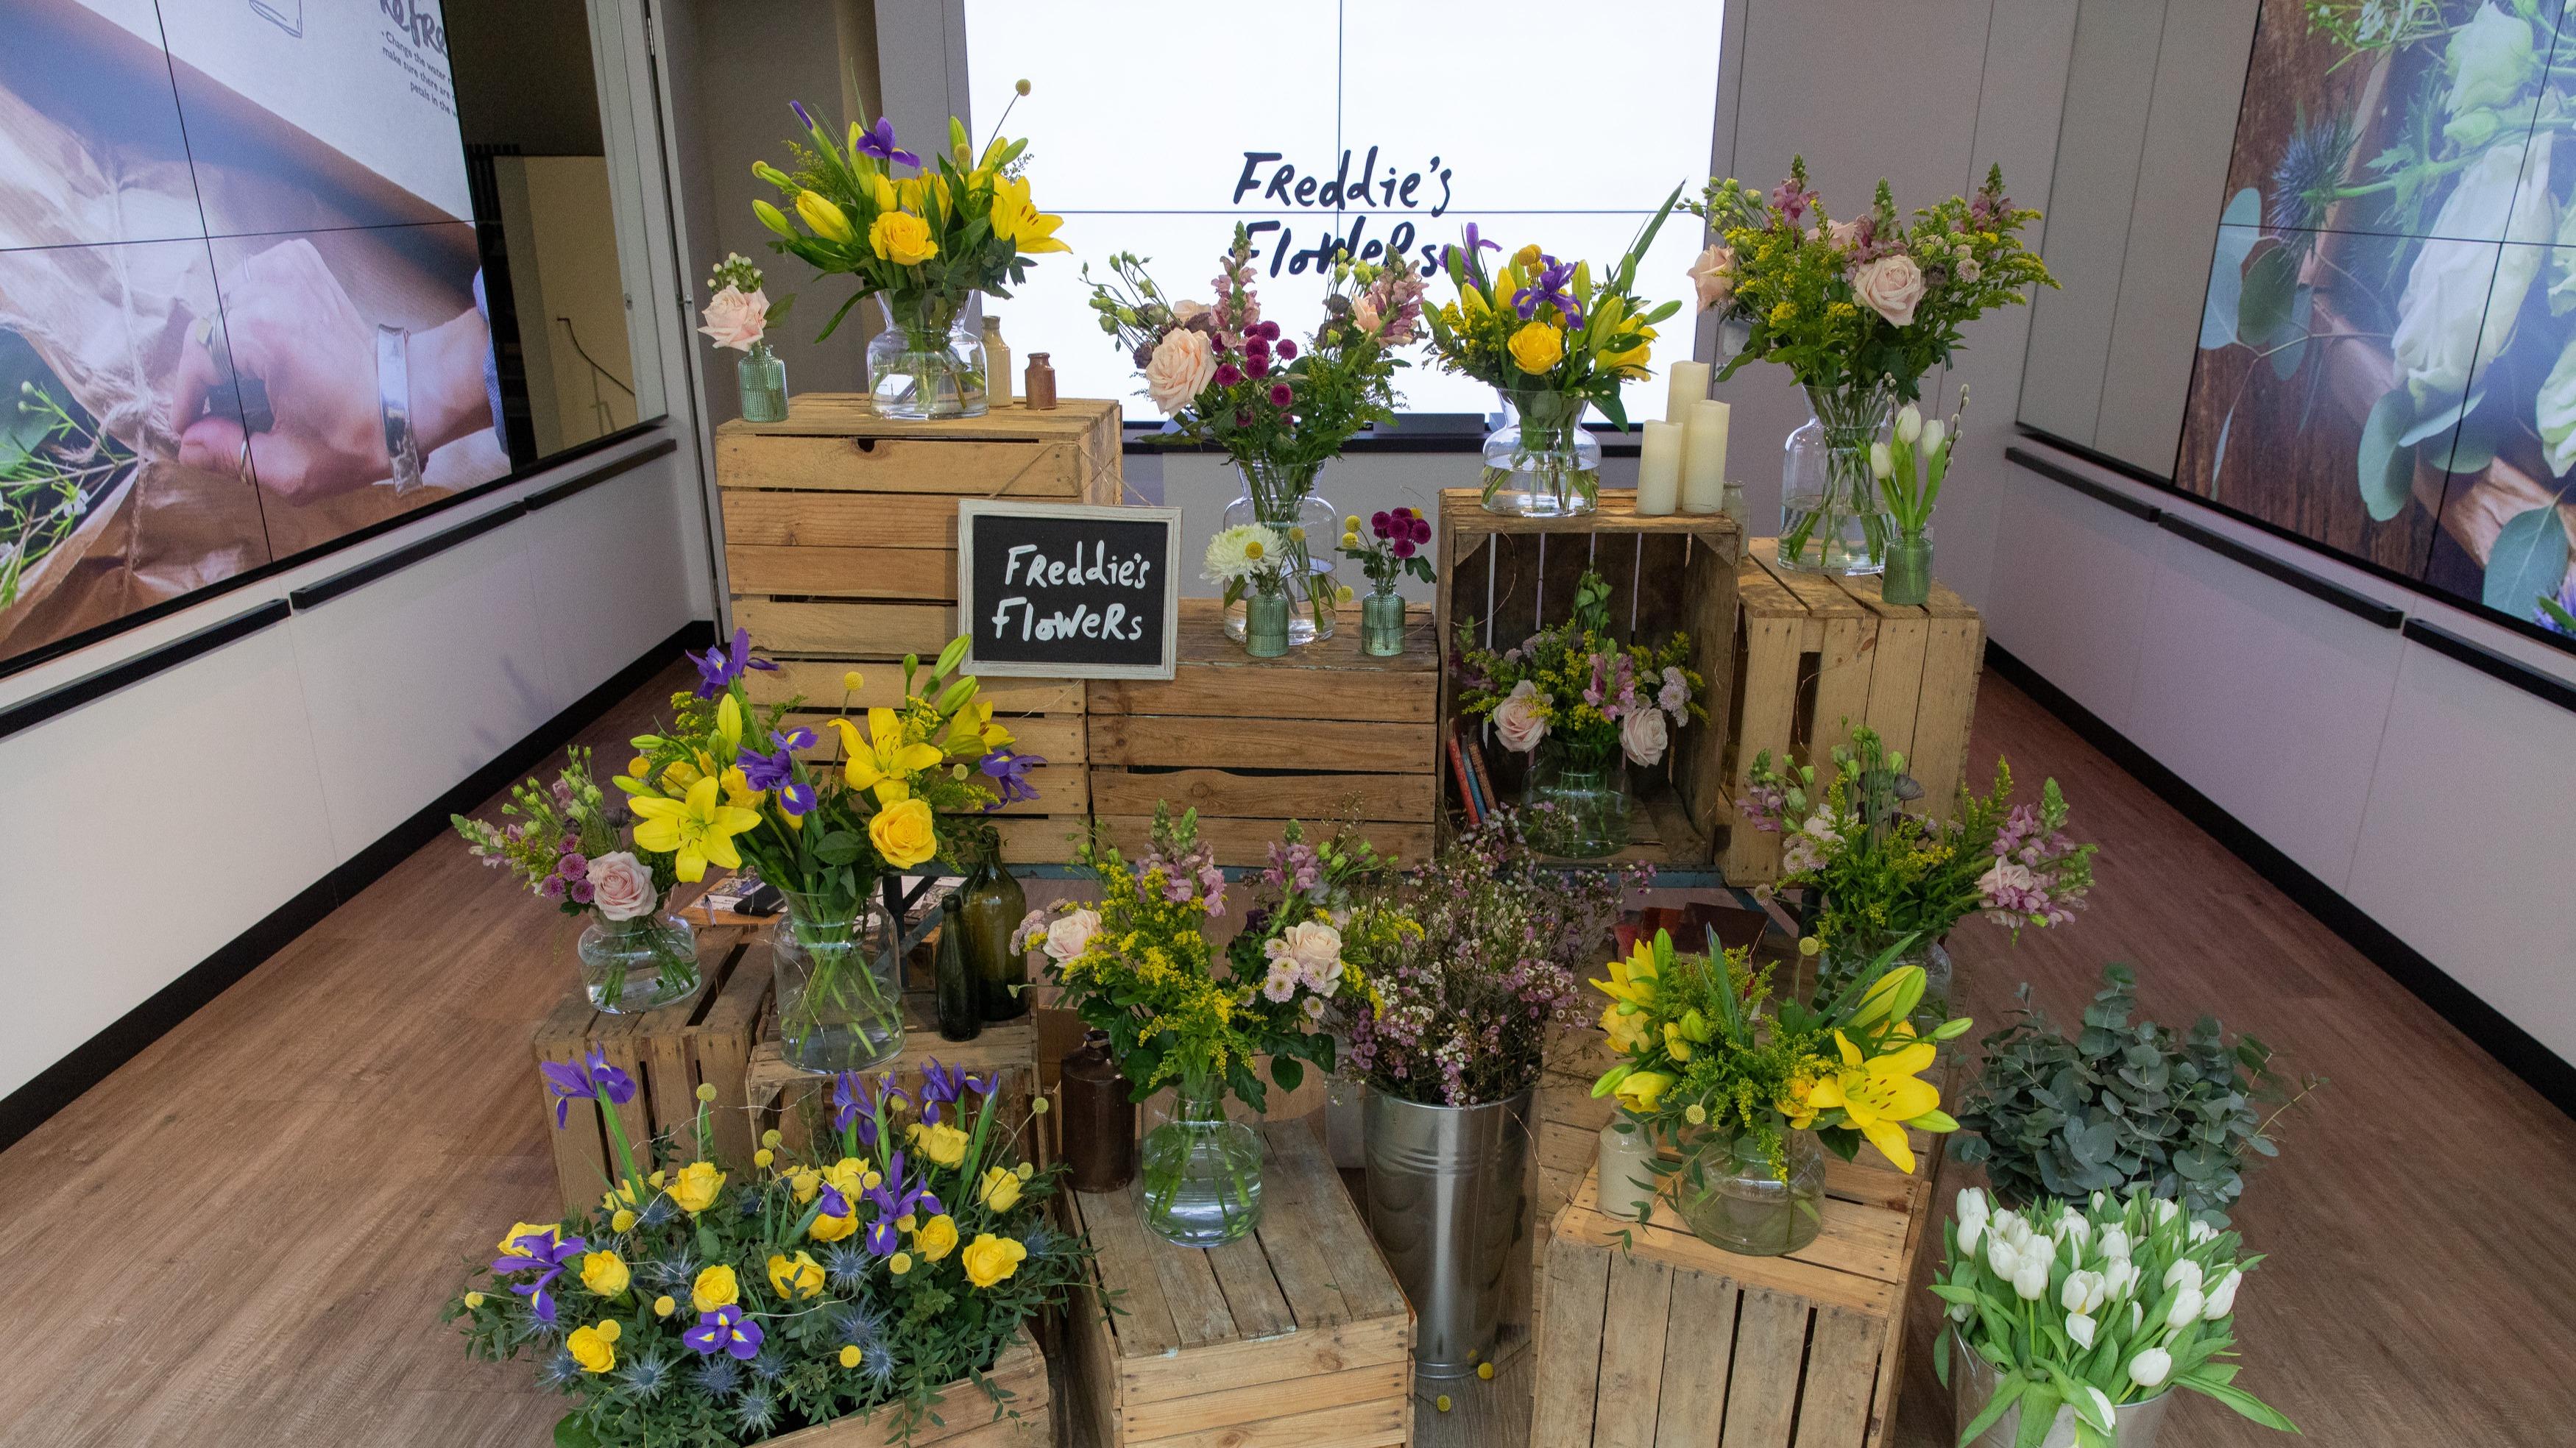 Display of Freddies Flowers in Sook Oxford Street during Freddies Flowers Pop Up